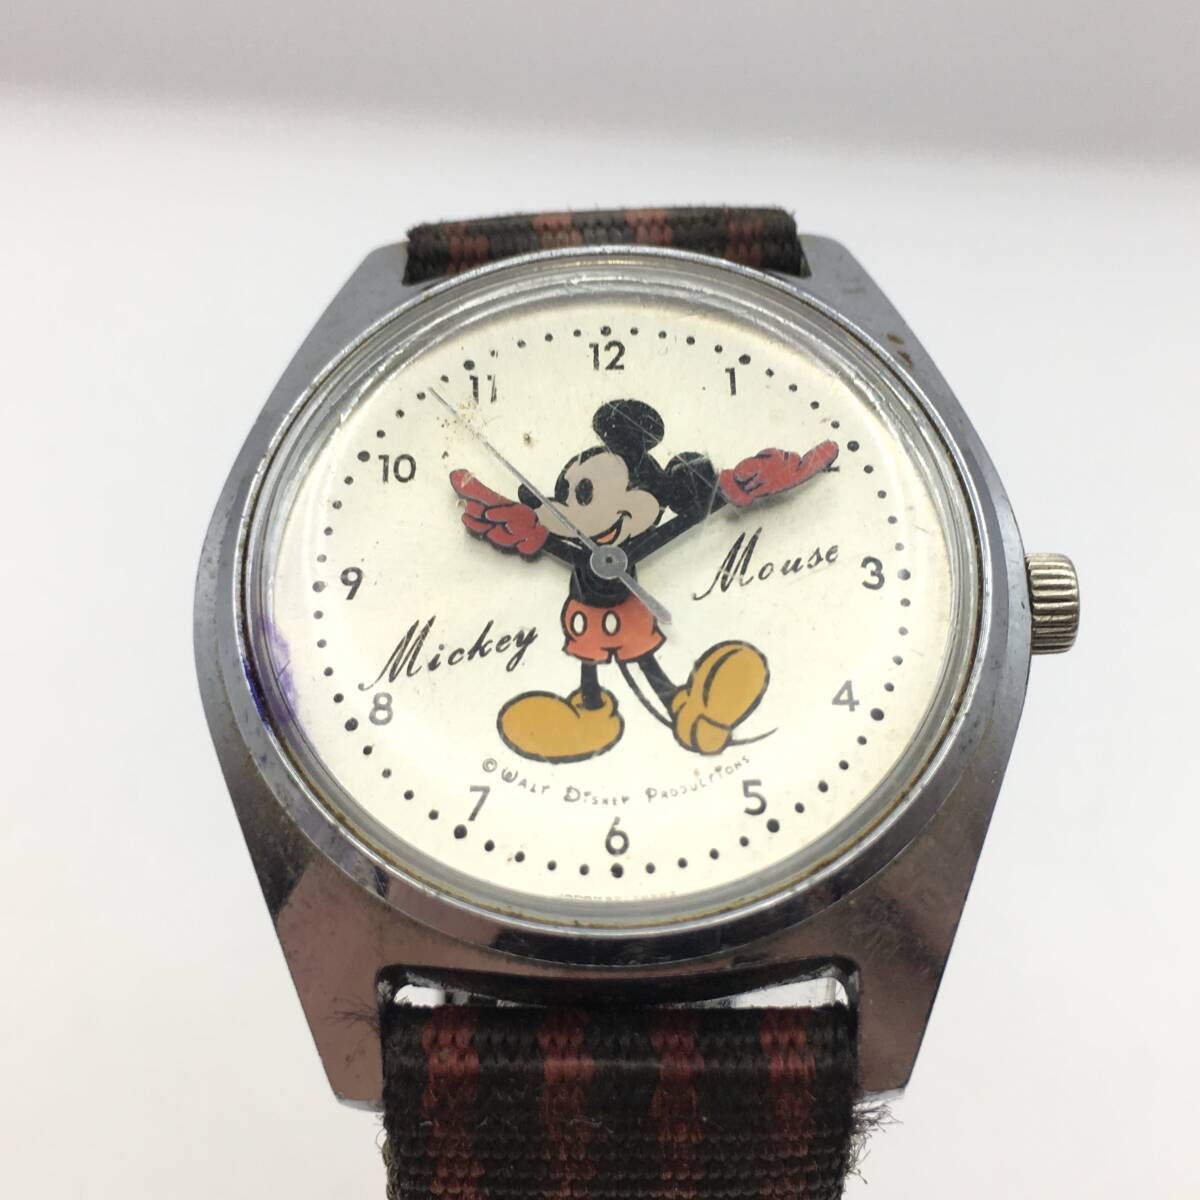 0C241-55 герой часы Mickey Mouse Mickey Mouse 3 стрелки мужской механический завод наручные часы 5000-7000 работа товар 